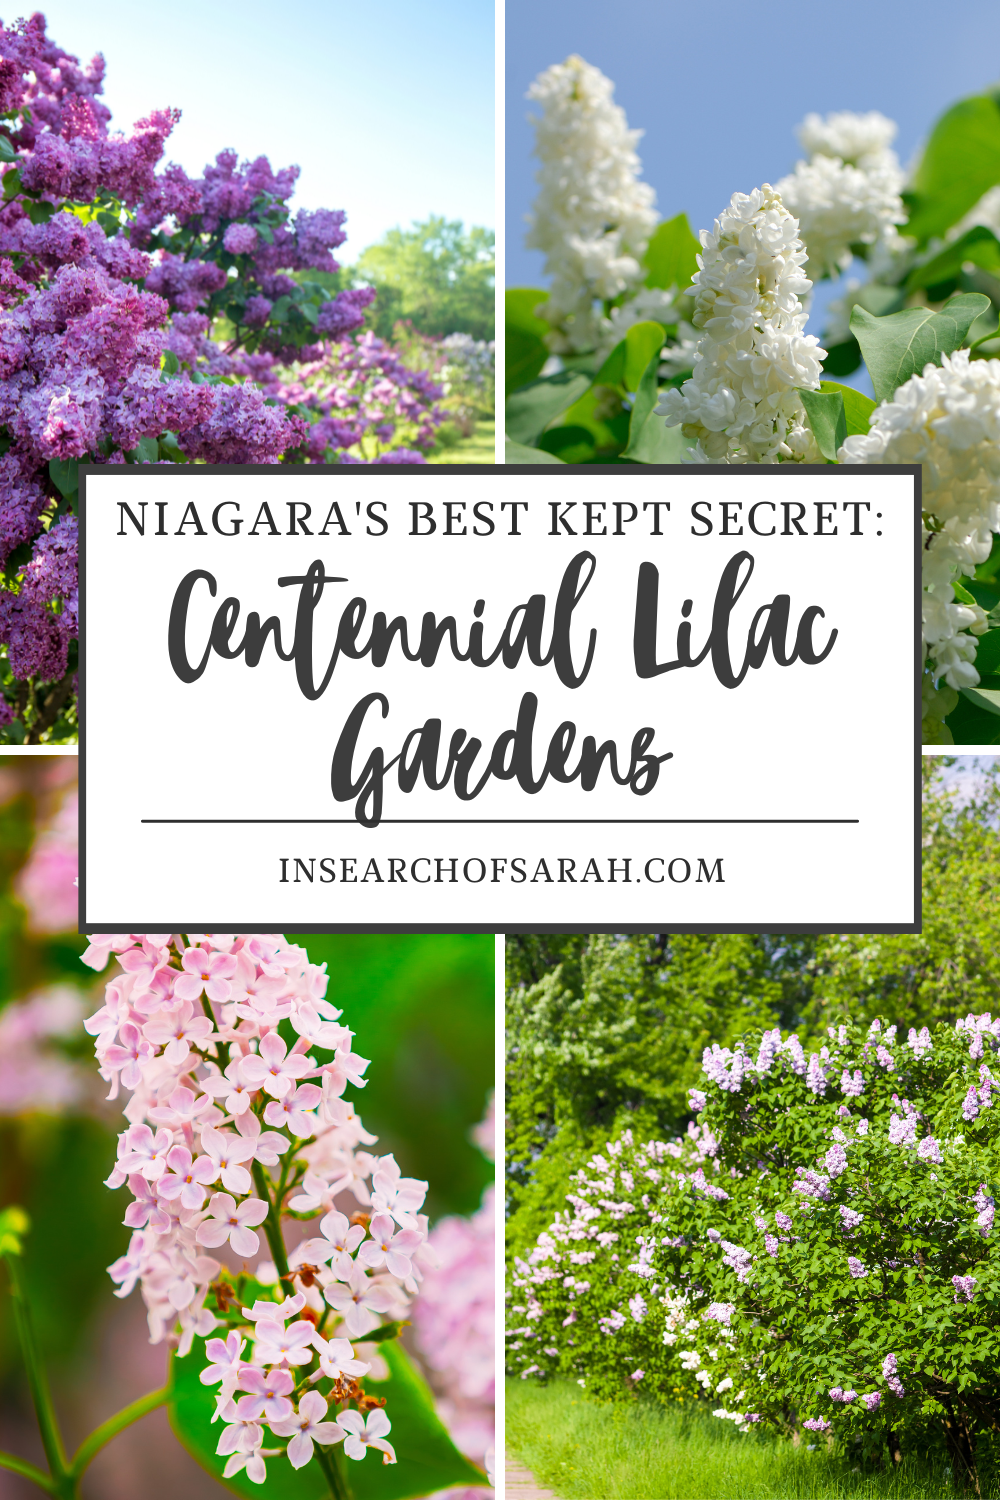 centennial lilac garden